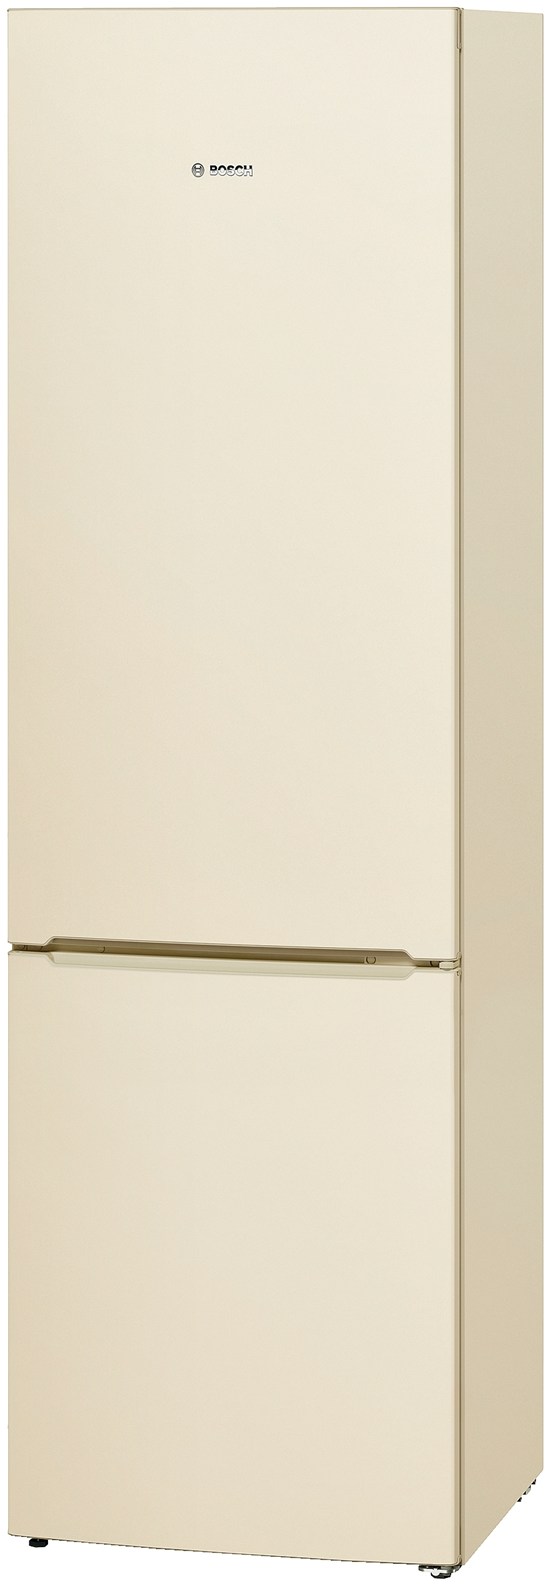 Холодильник Bosch KGV39VK23